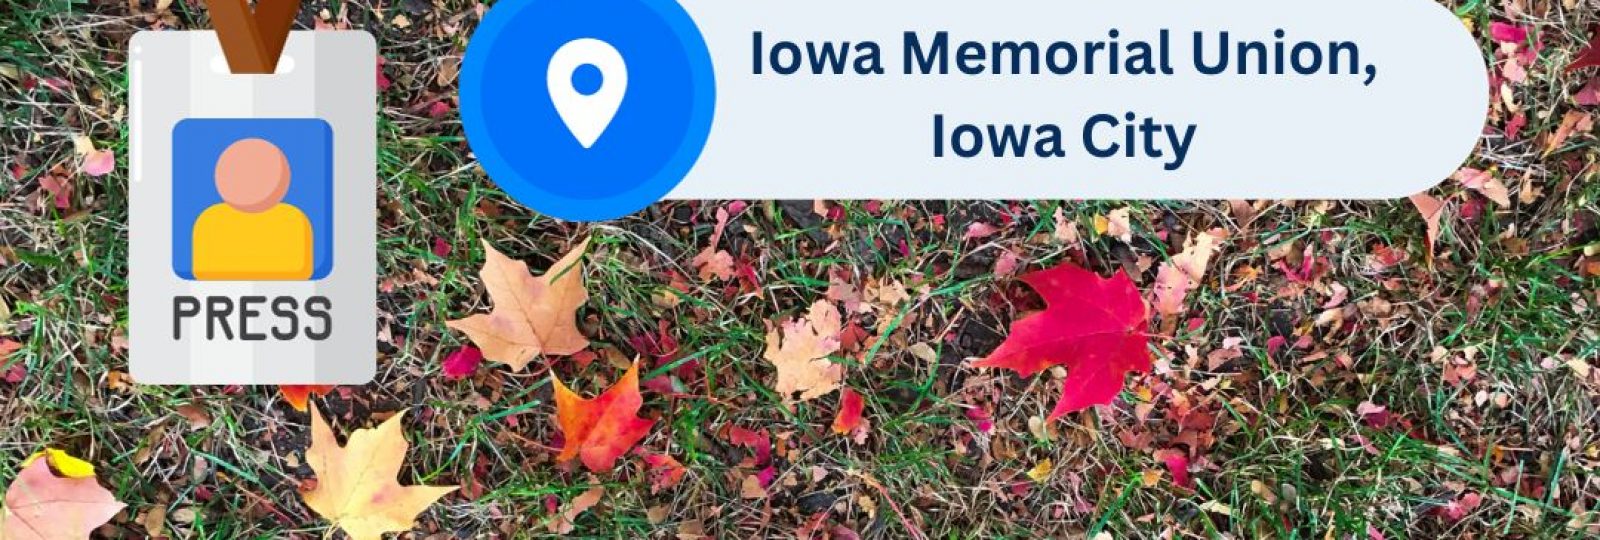 Iowa Memorial Union, Iowa City